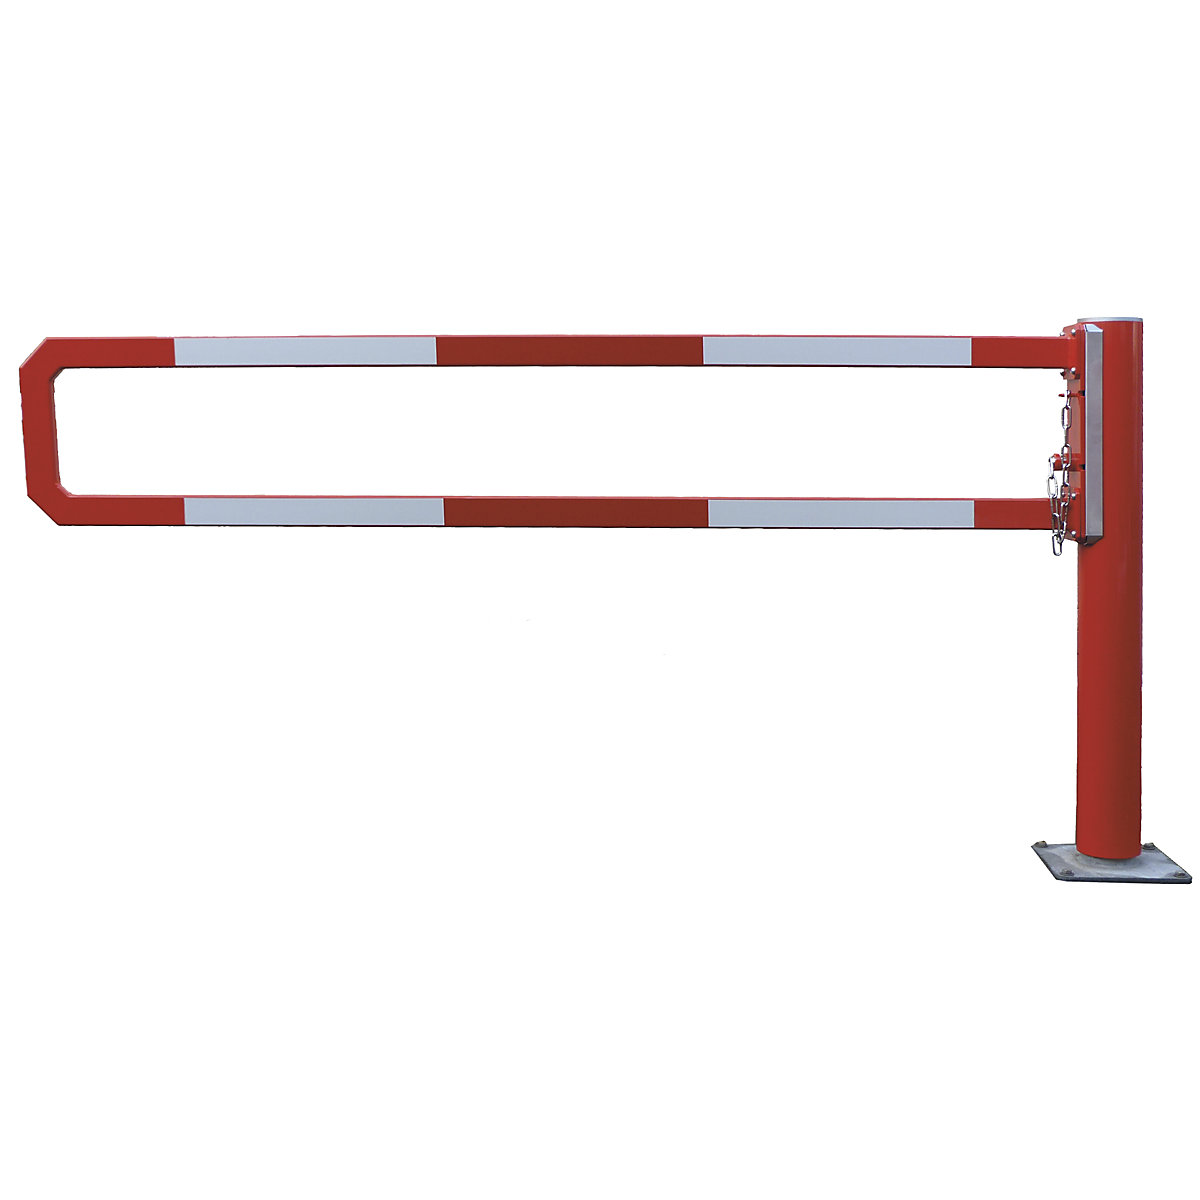 Barrière manuelle tournante – Mannus, largeur utile 3 m, galvanisé à chaud avec peinture époxy rouge-2